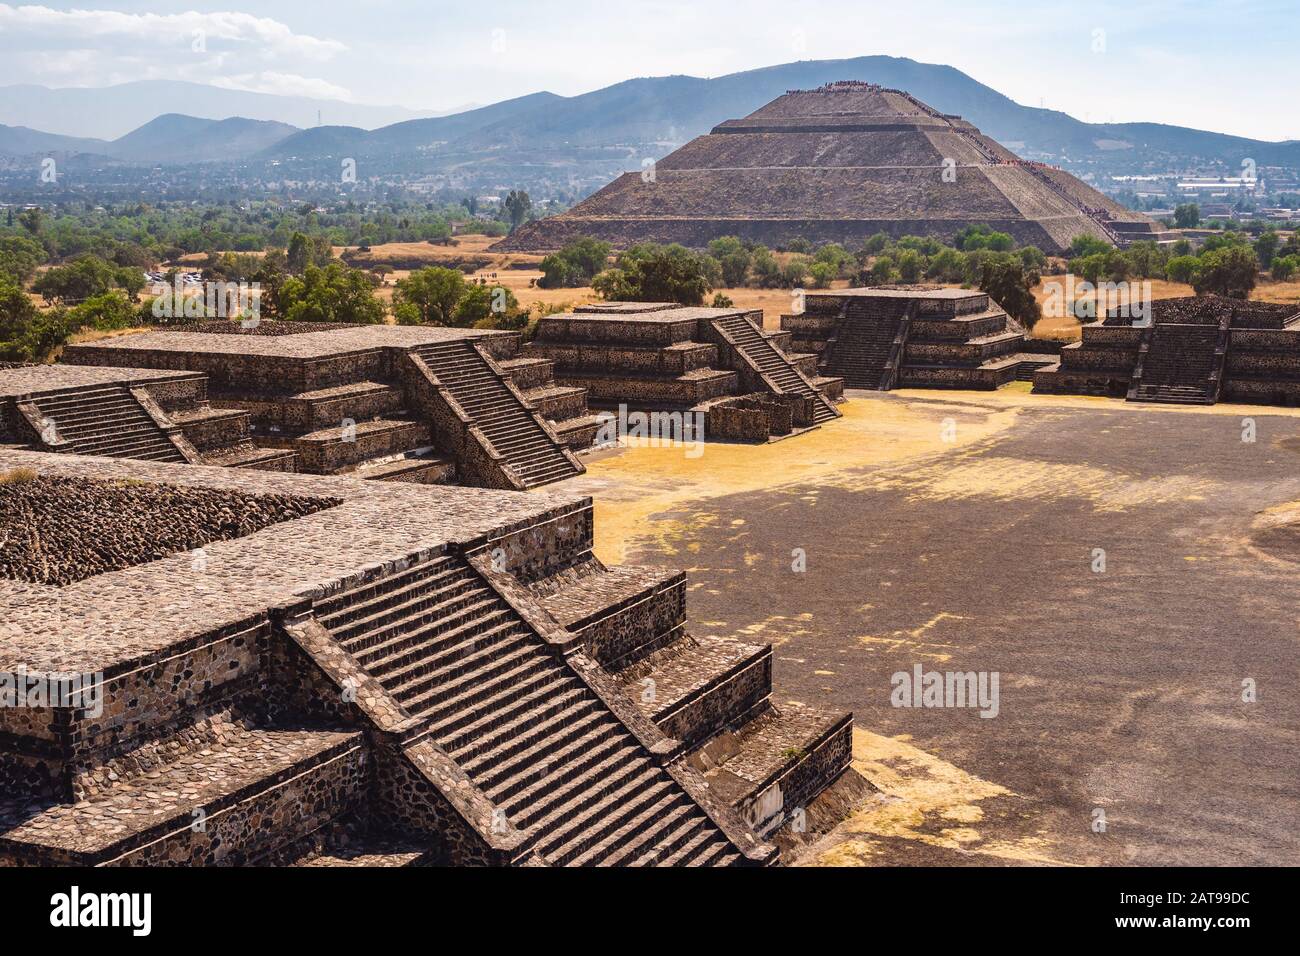 Vue sur la Pyramide du Soleil et les ruines de l'ancienne ville Aztec de Teotihuacan, près de Mexico, Mexique. Banque D'Images